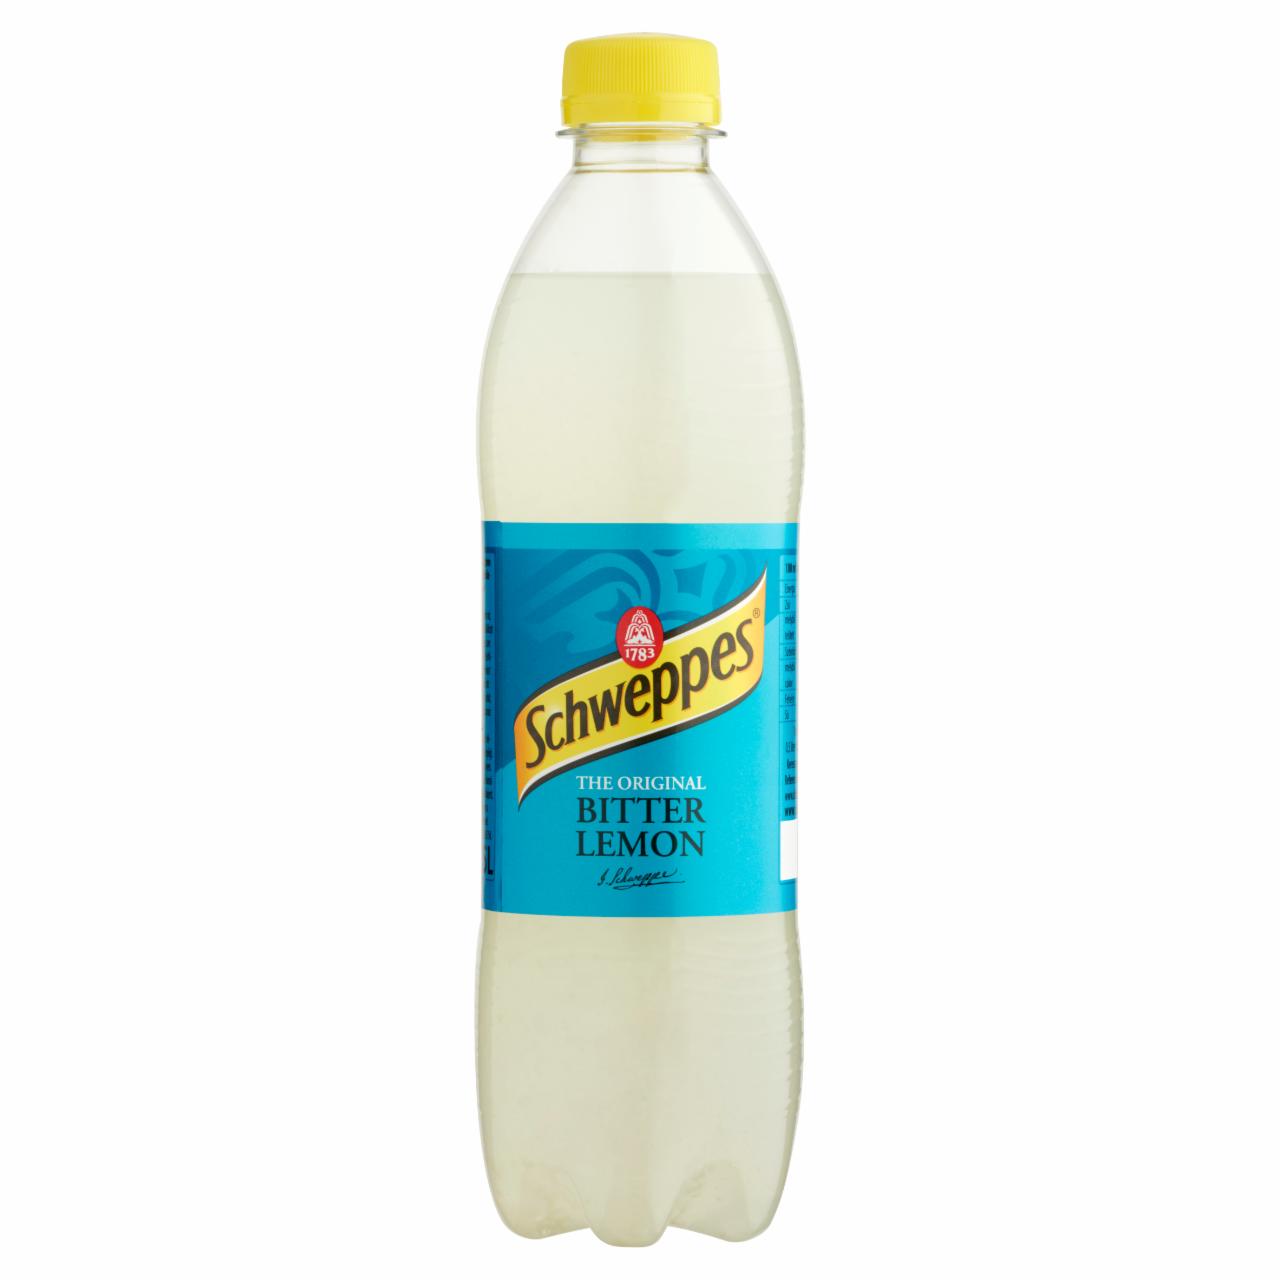 Képek - Schweppes Bitter Lemon csökkentett energiatartalmú citrom szénsavas üdítőital 0,5 l